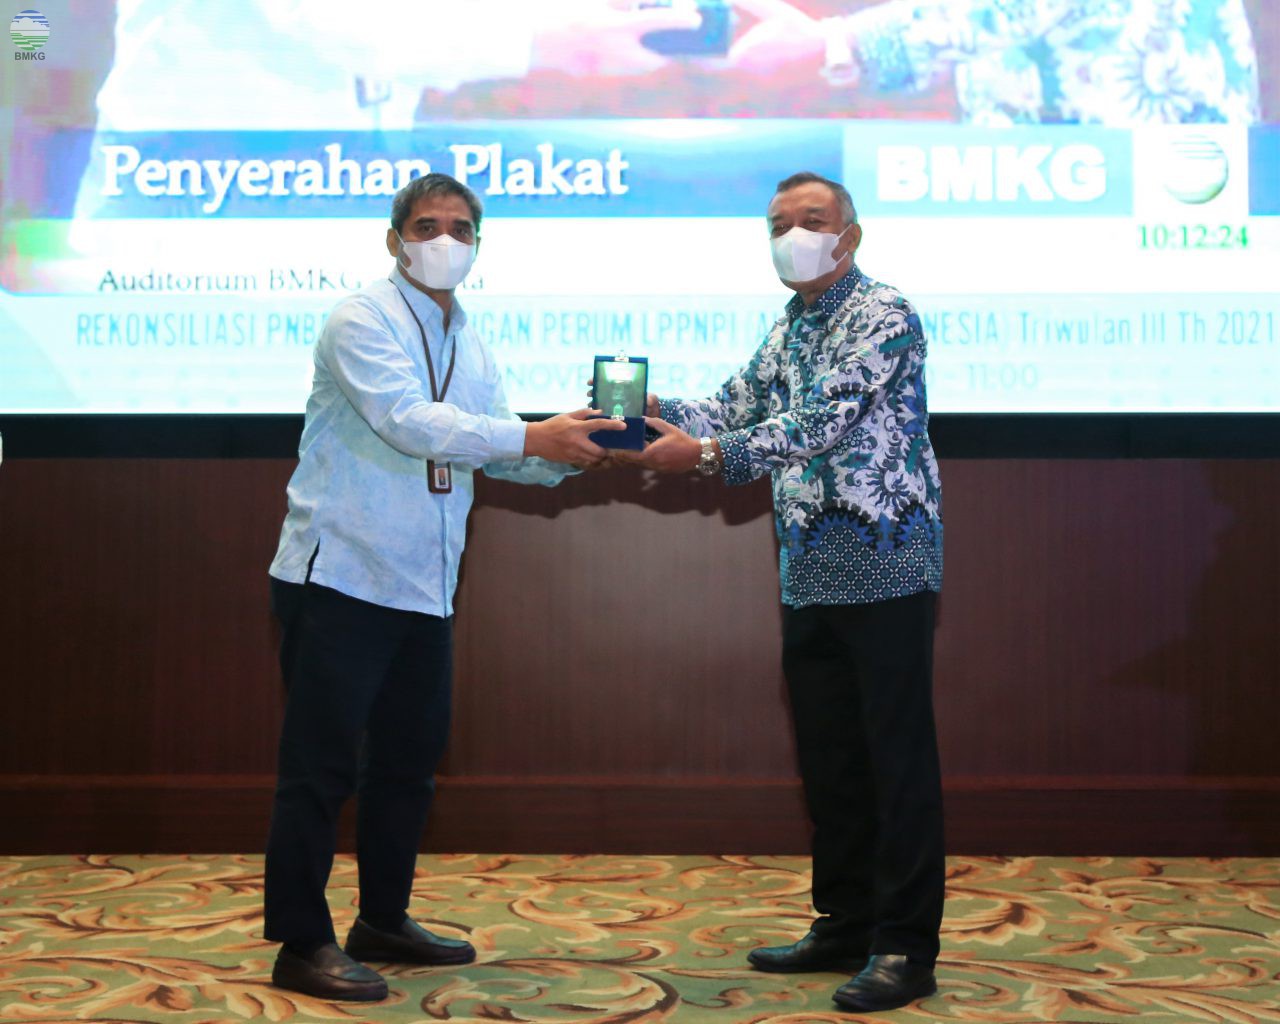 Sestama BMKG Buka Rekonsiliasi PNBP BMKG dengan Airnav Indonesia